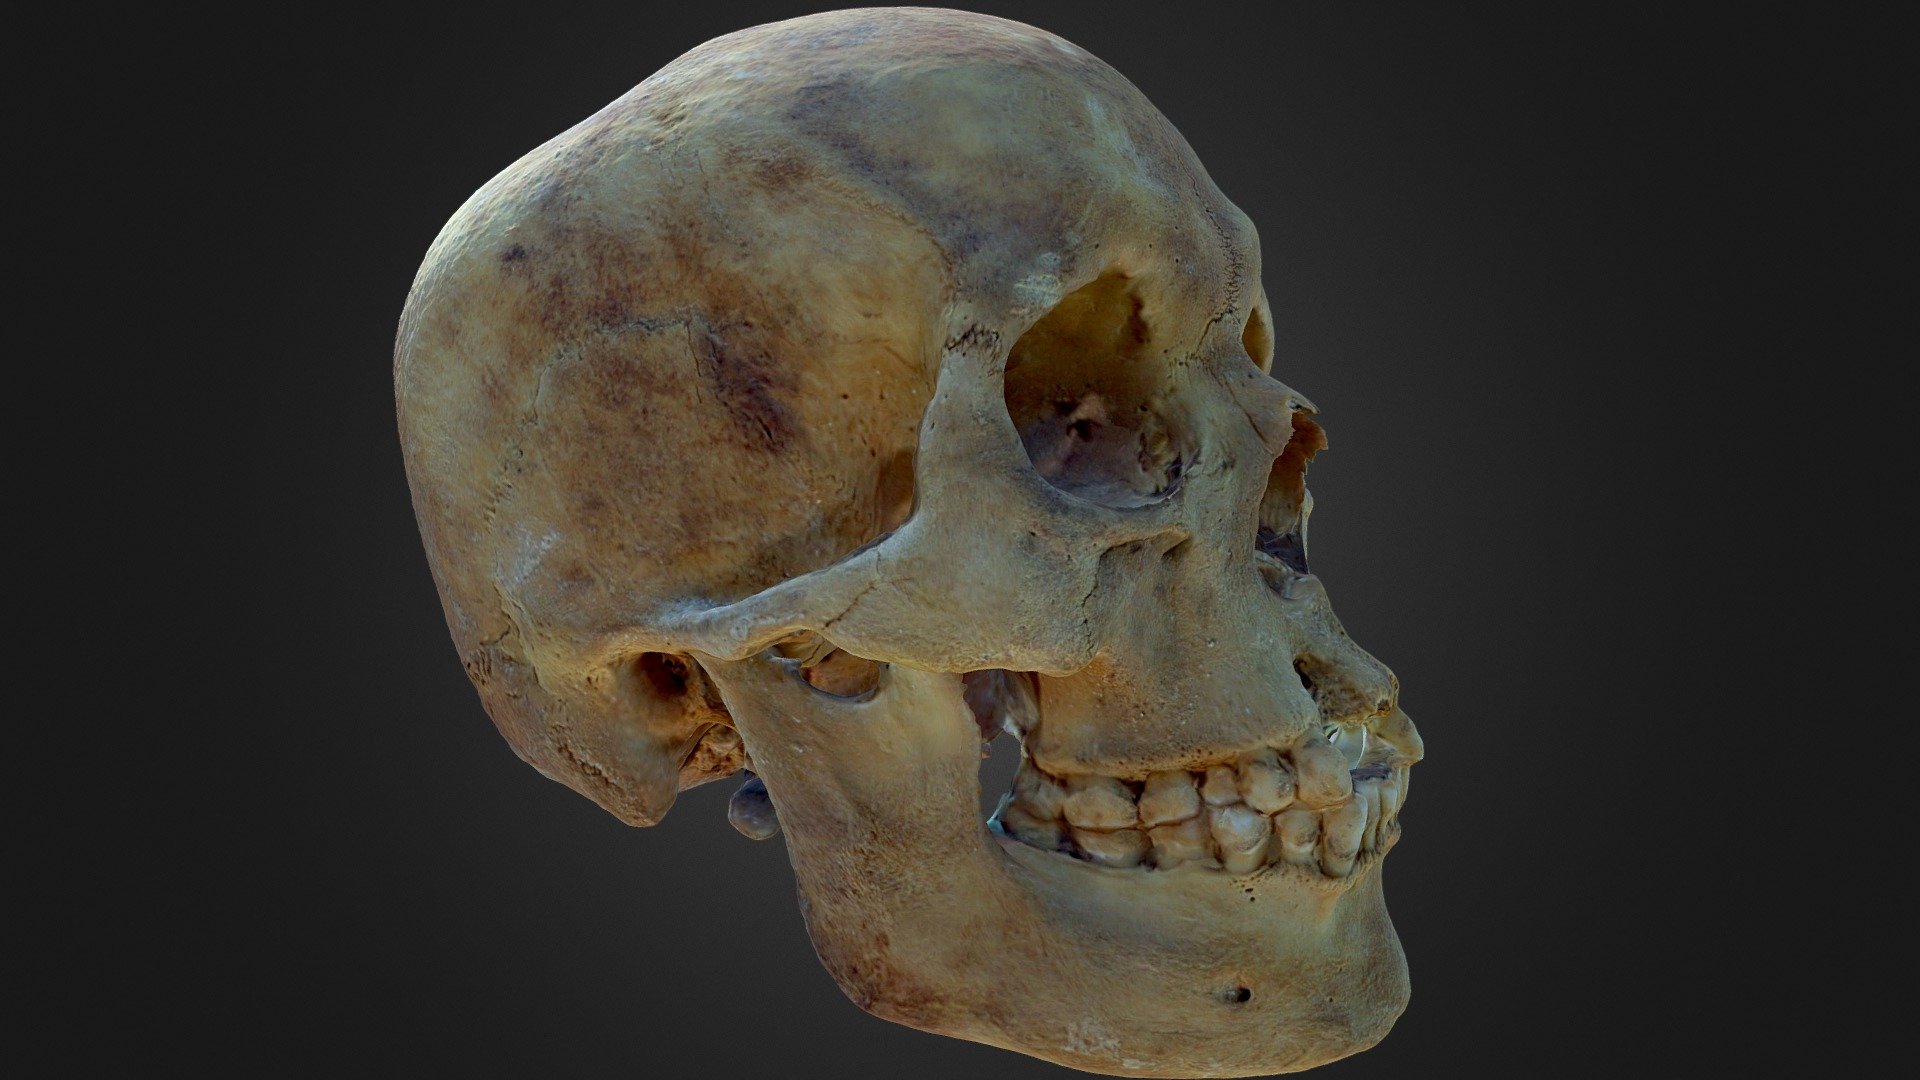 Skull 01 (version 1)